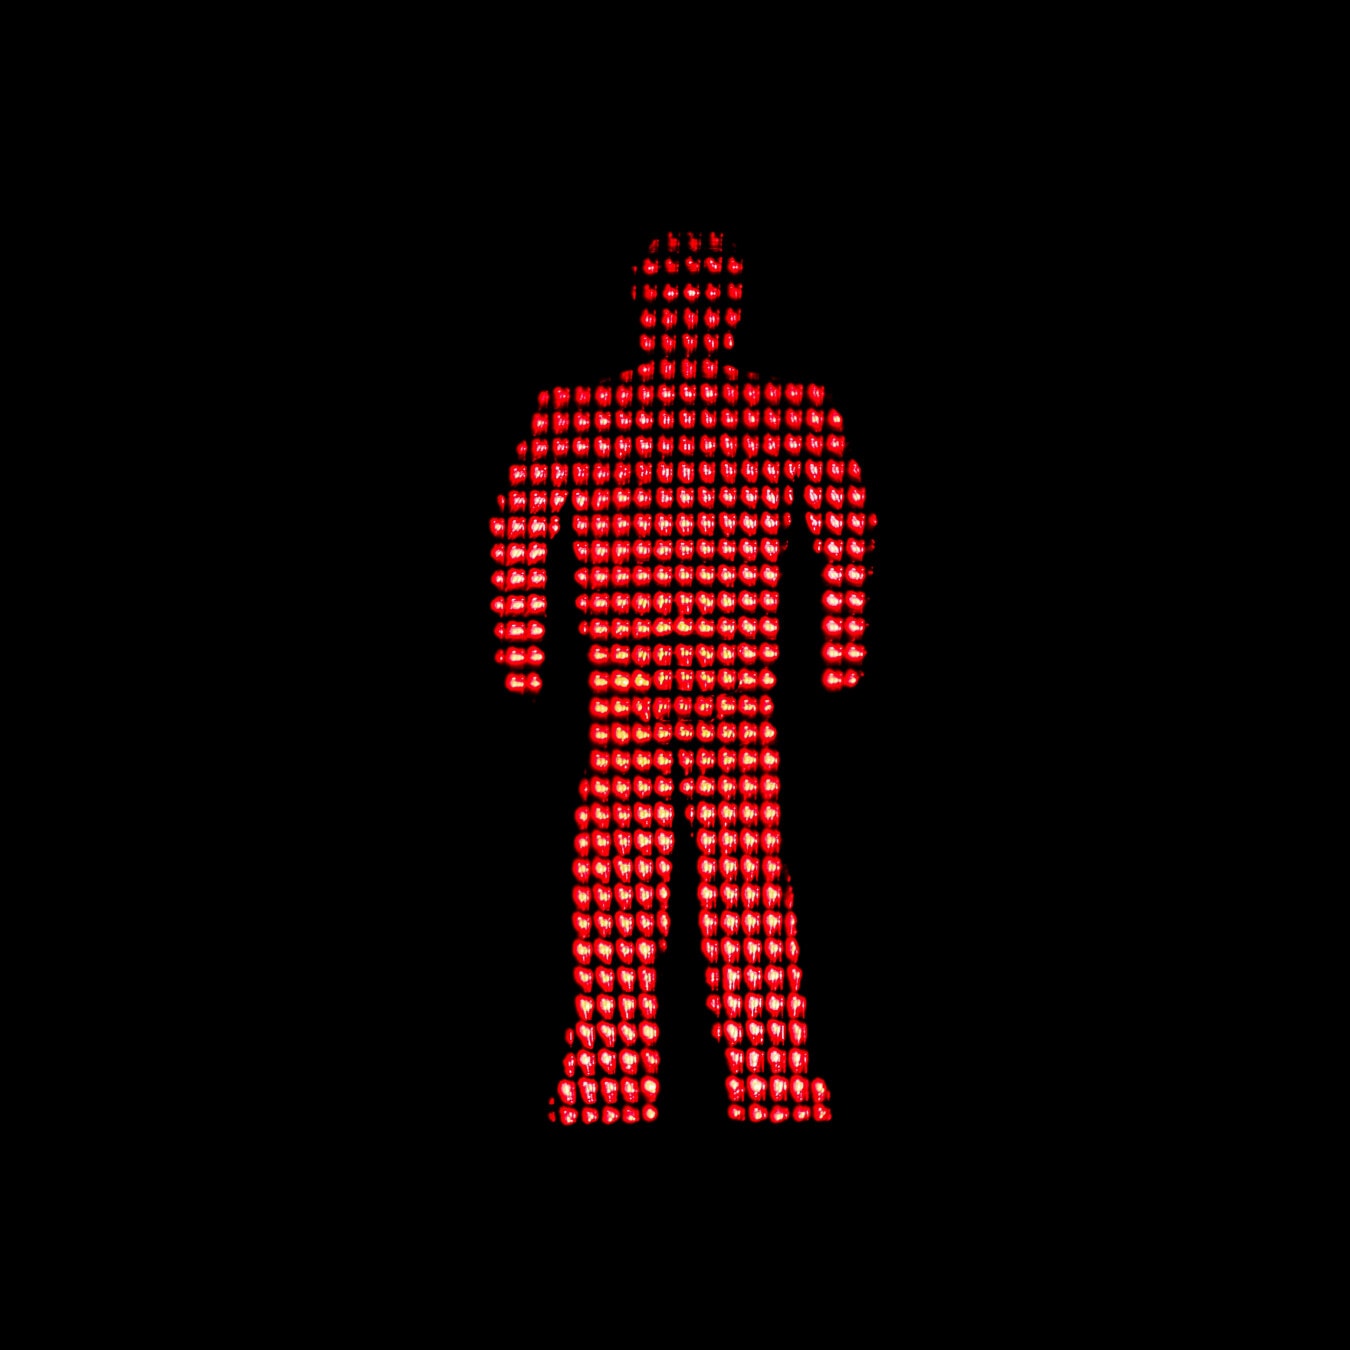 červené světlo, semafor, semafor, světlo, červená, řízení provozu, varování, Stop, symbol, provoz